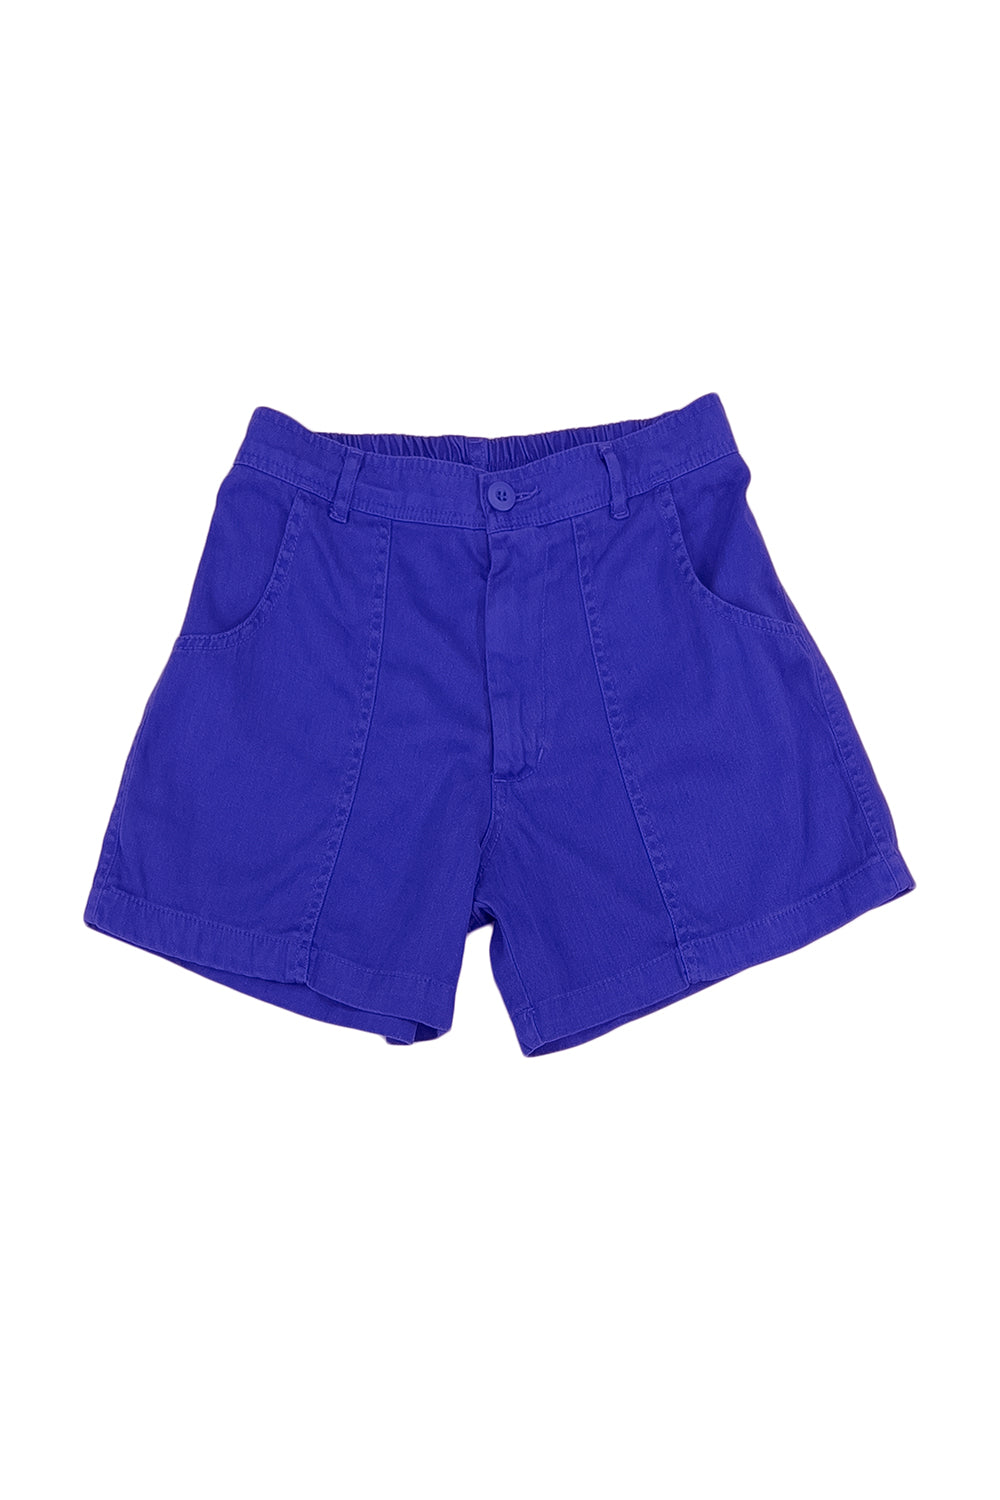 Boy Short  Jungmaven Hemp Clothing & Accessories - USA Made